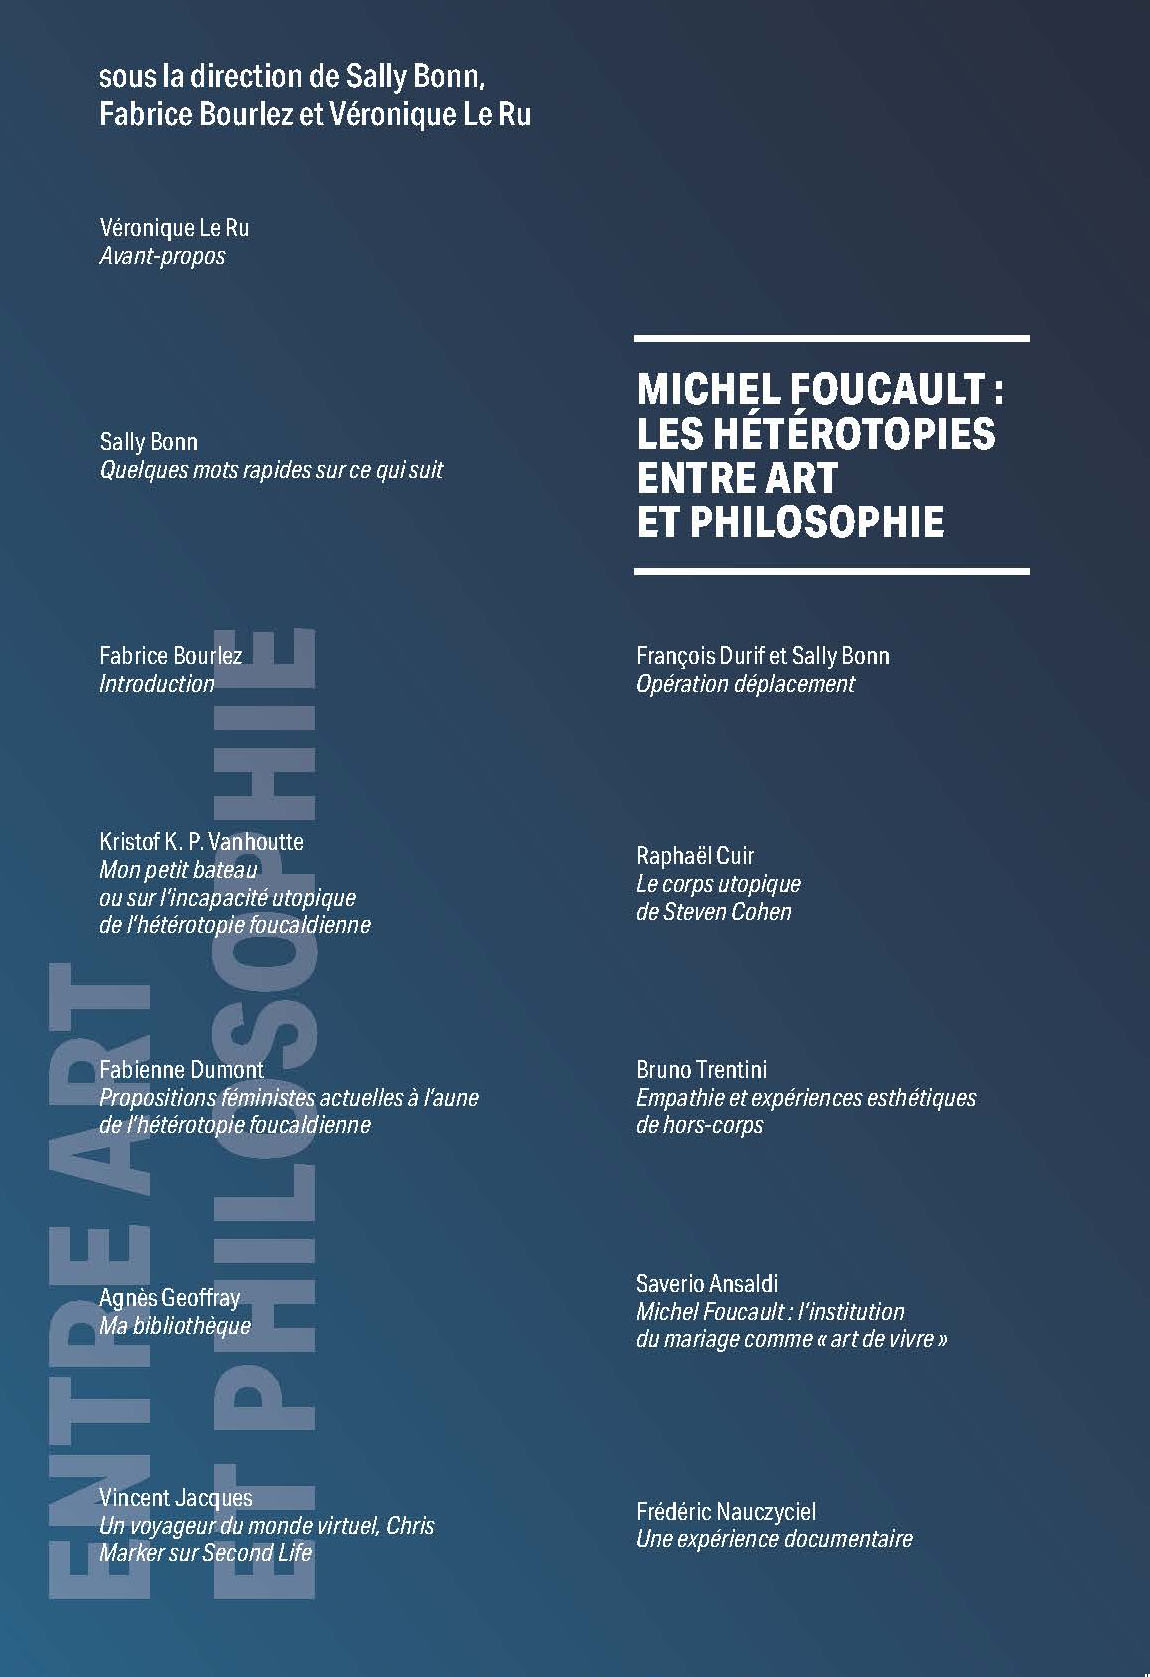 Michel Foucault : les hétérotopies entre art et philosophie